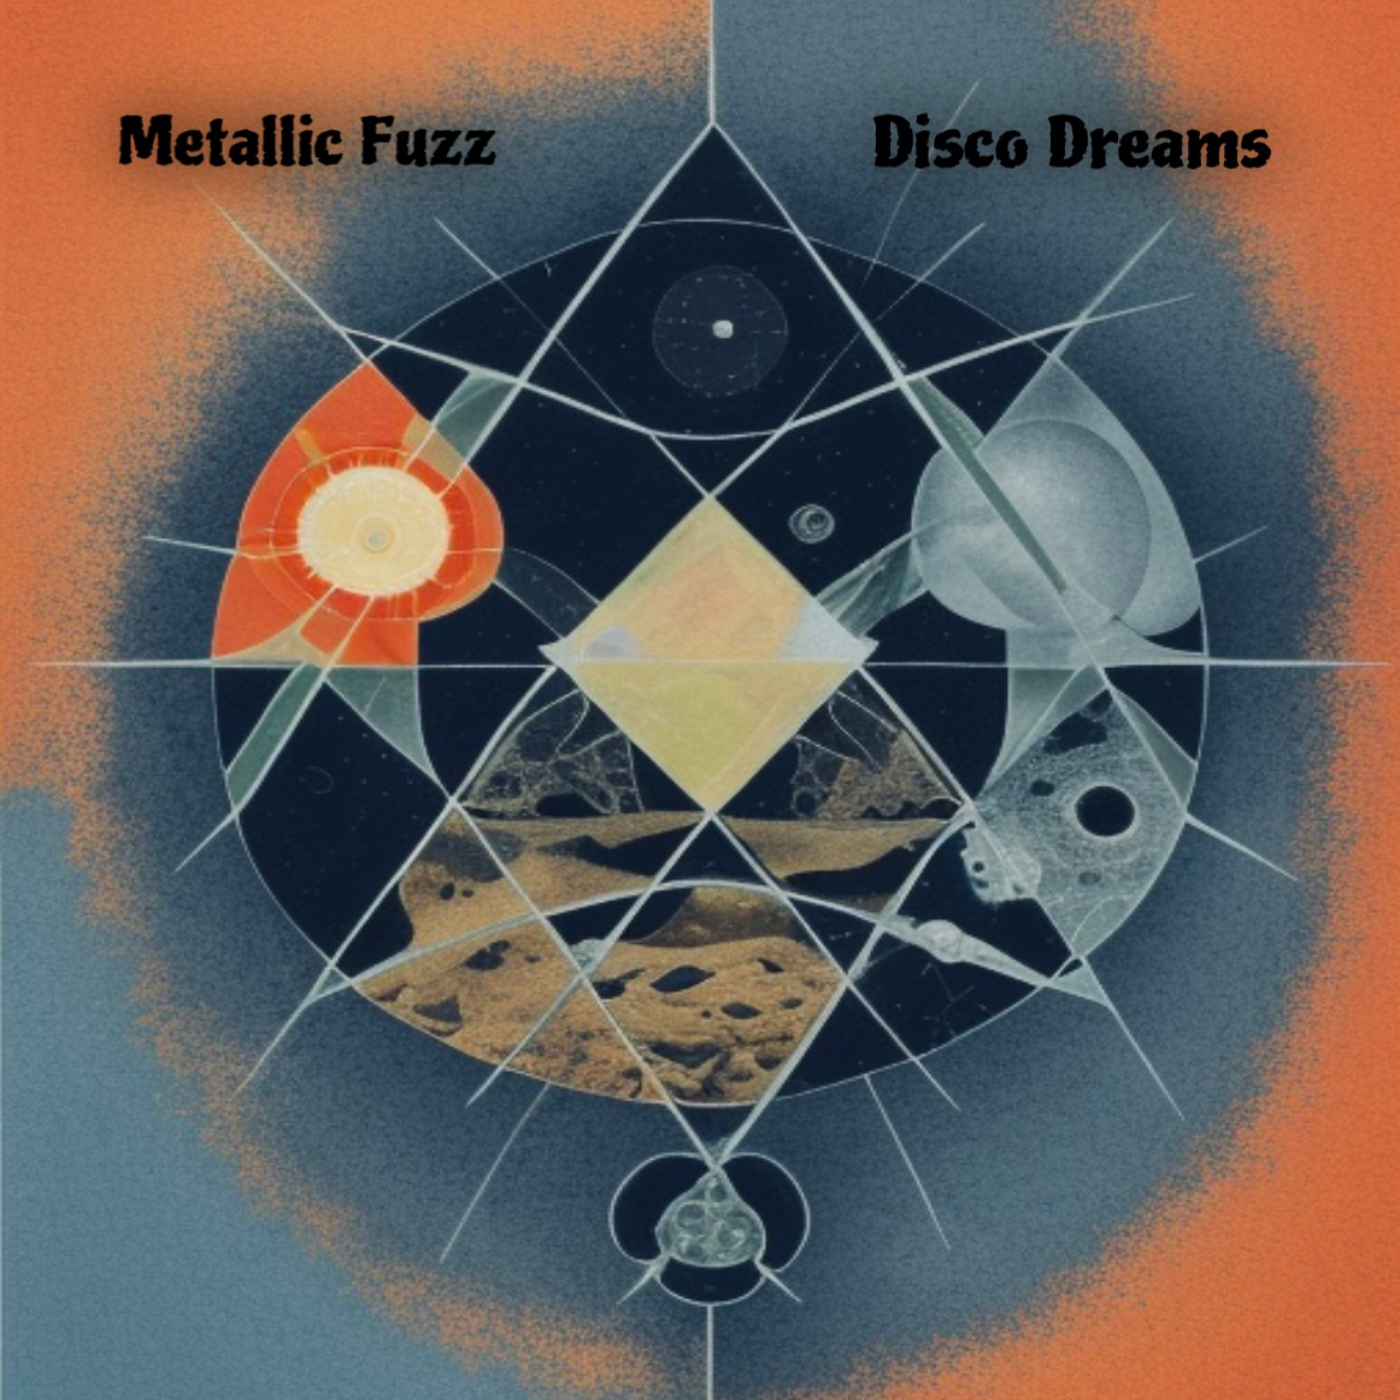 Disco Dreams – “Metallic Fuzz”